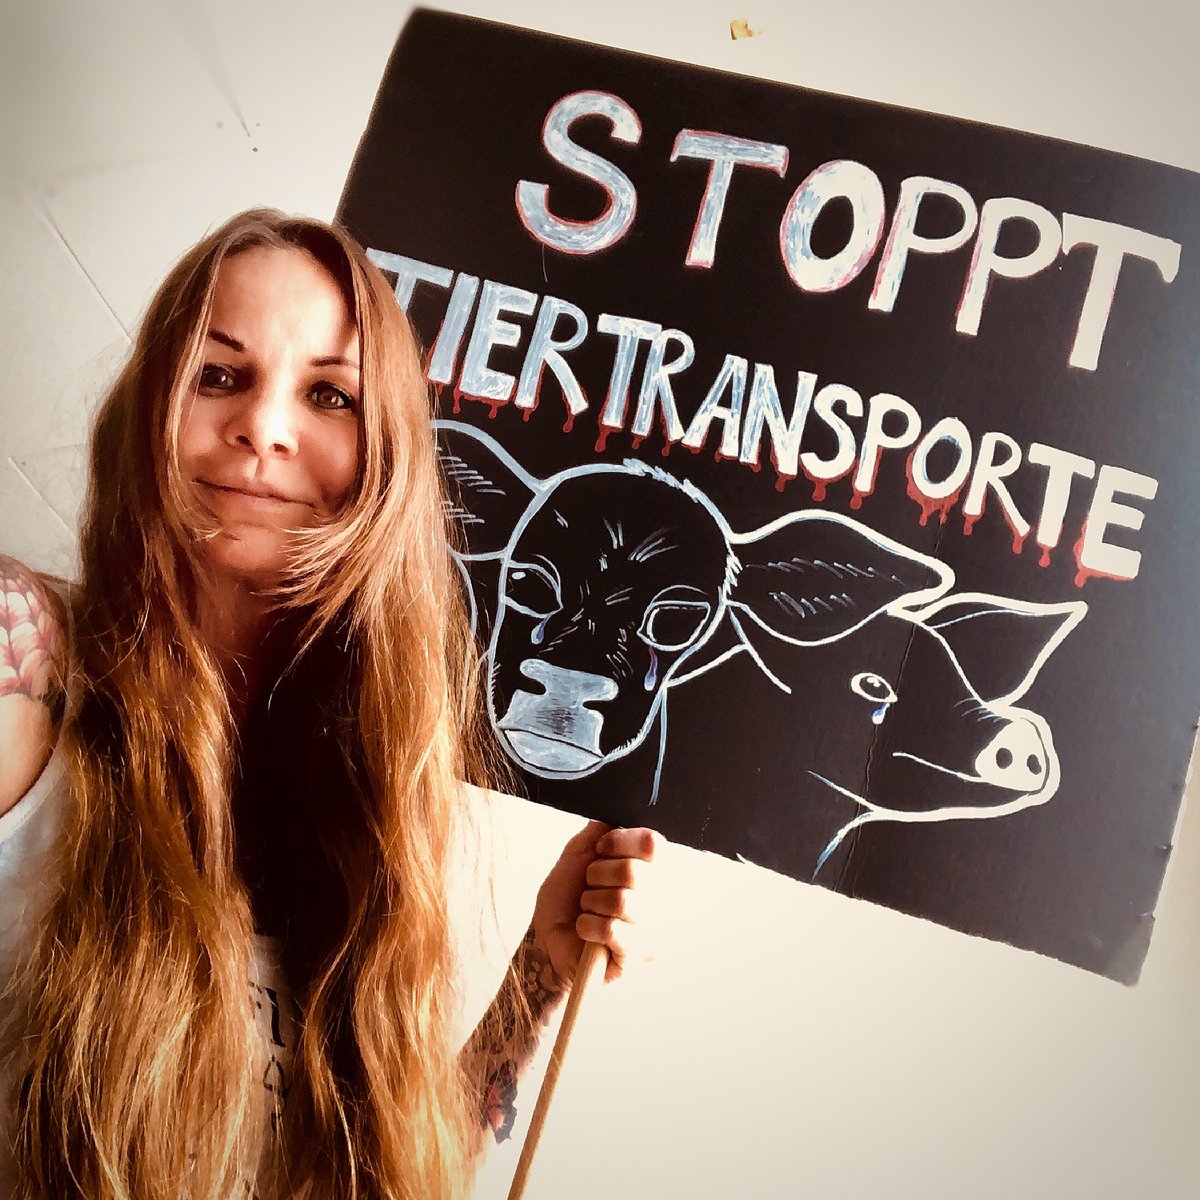 Heute ist der Int. Tag gegen #Tiertransporte! 
Weltweit machen Tierschützer: innen auf die qualvollen Tiertransporte aufmerksam. #StopLiveExports #transportestoppen